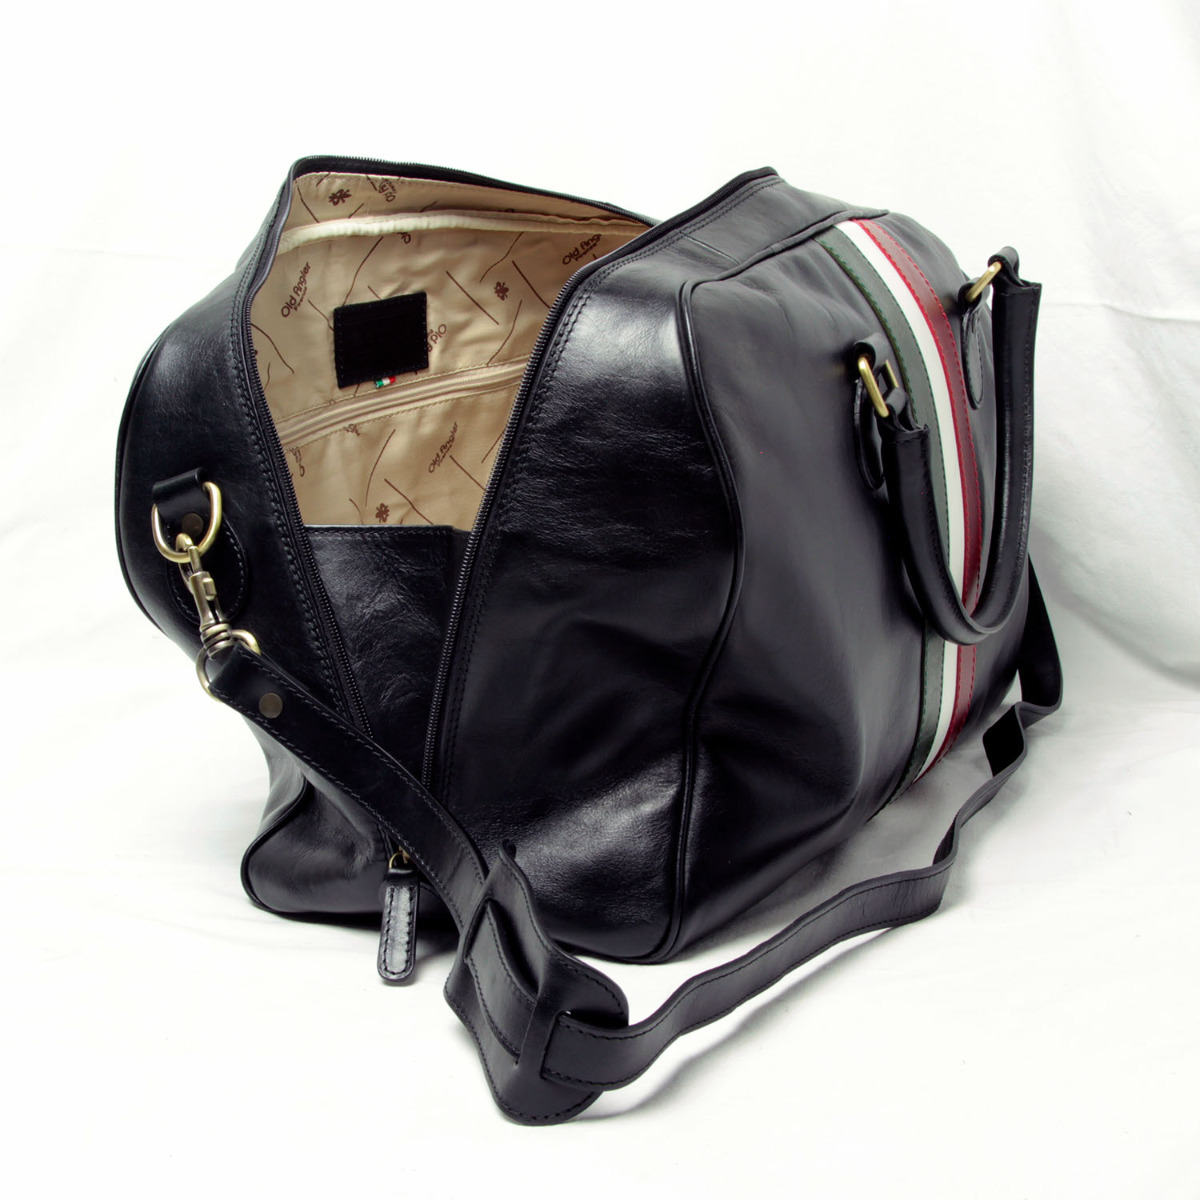 Full grain leather duffle bag - black|404889NE|Old Angler Firenze